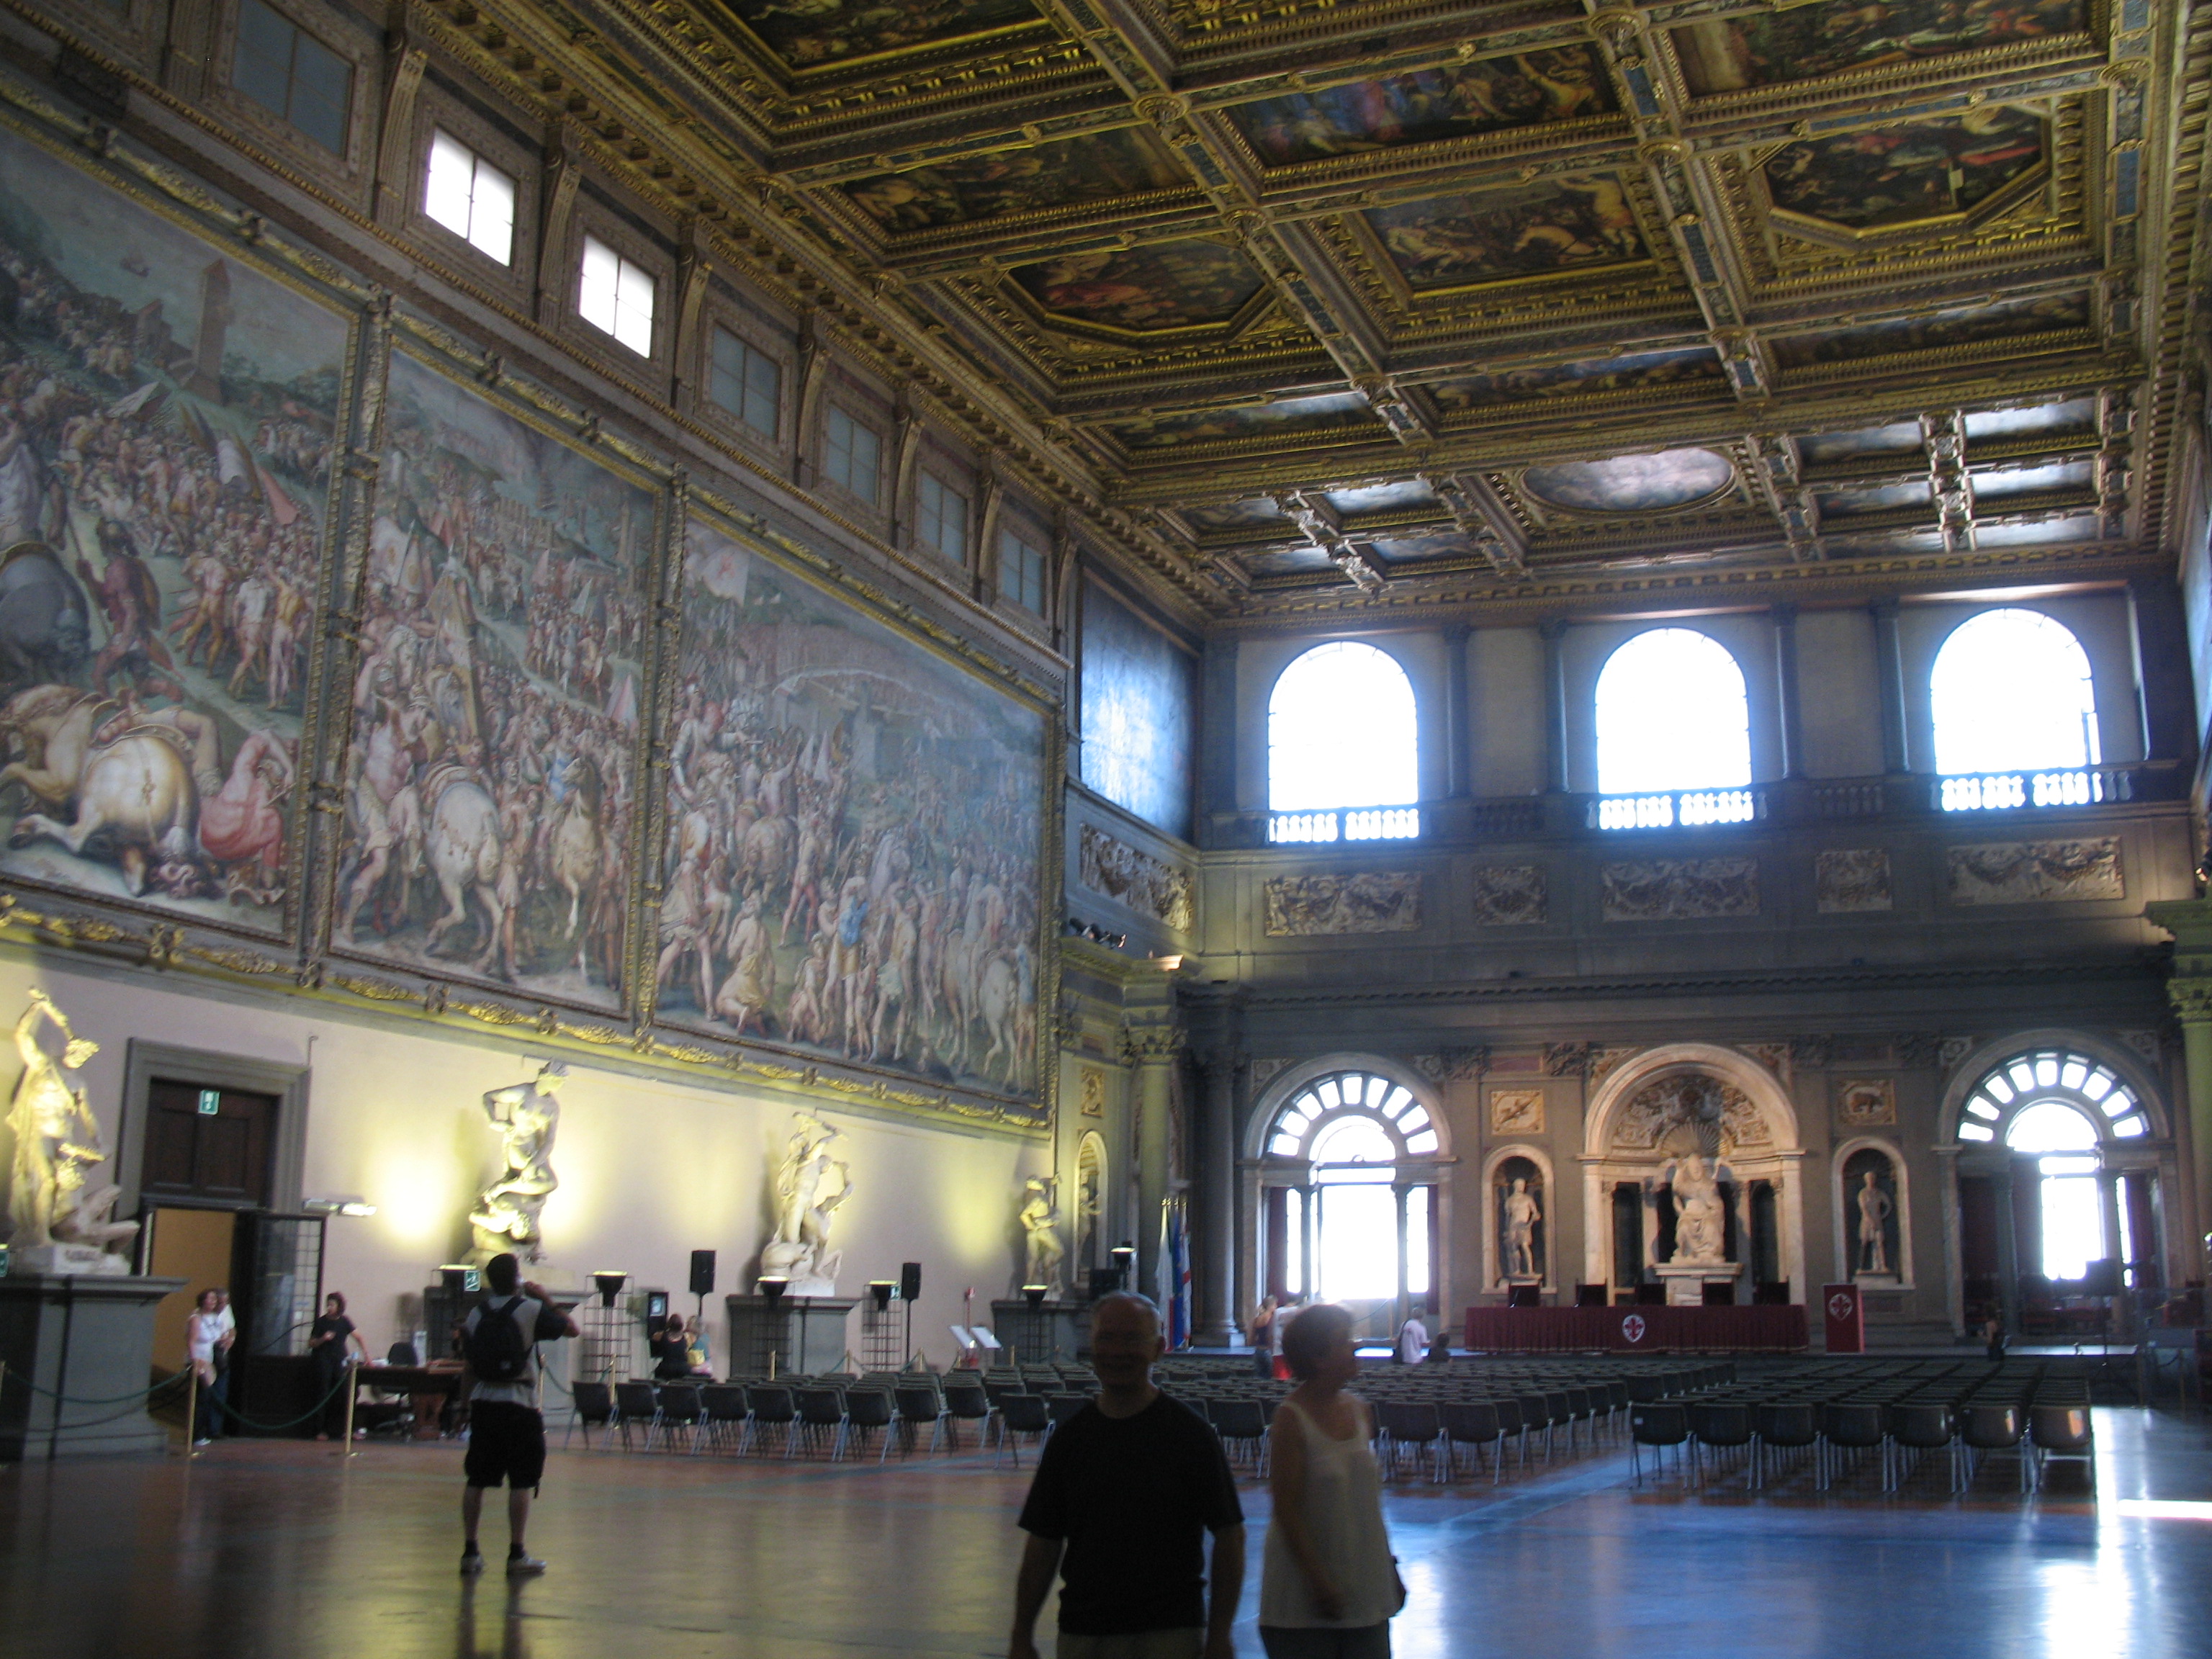 Palazzo Vecchio – Salle des 500 | Voyages en Italie